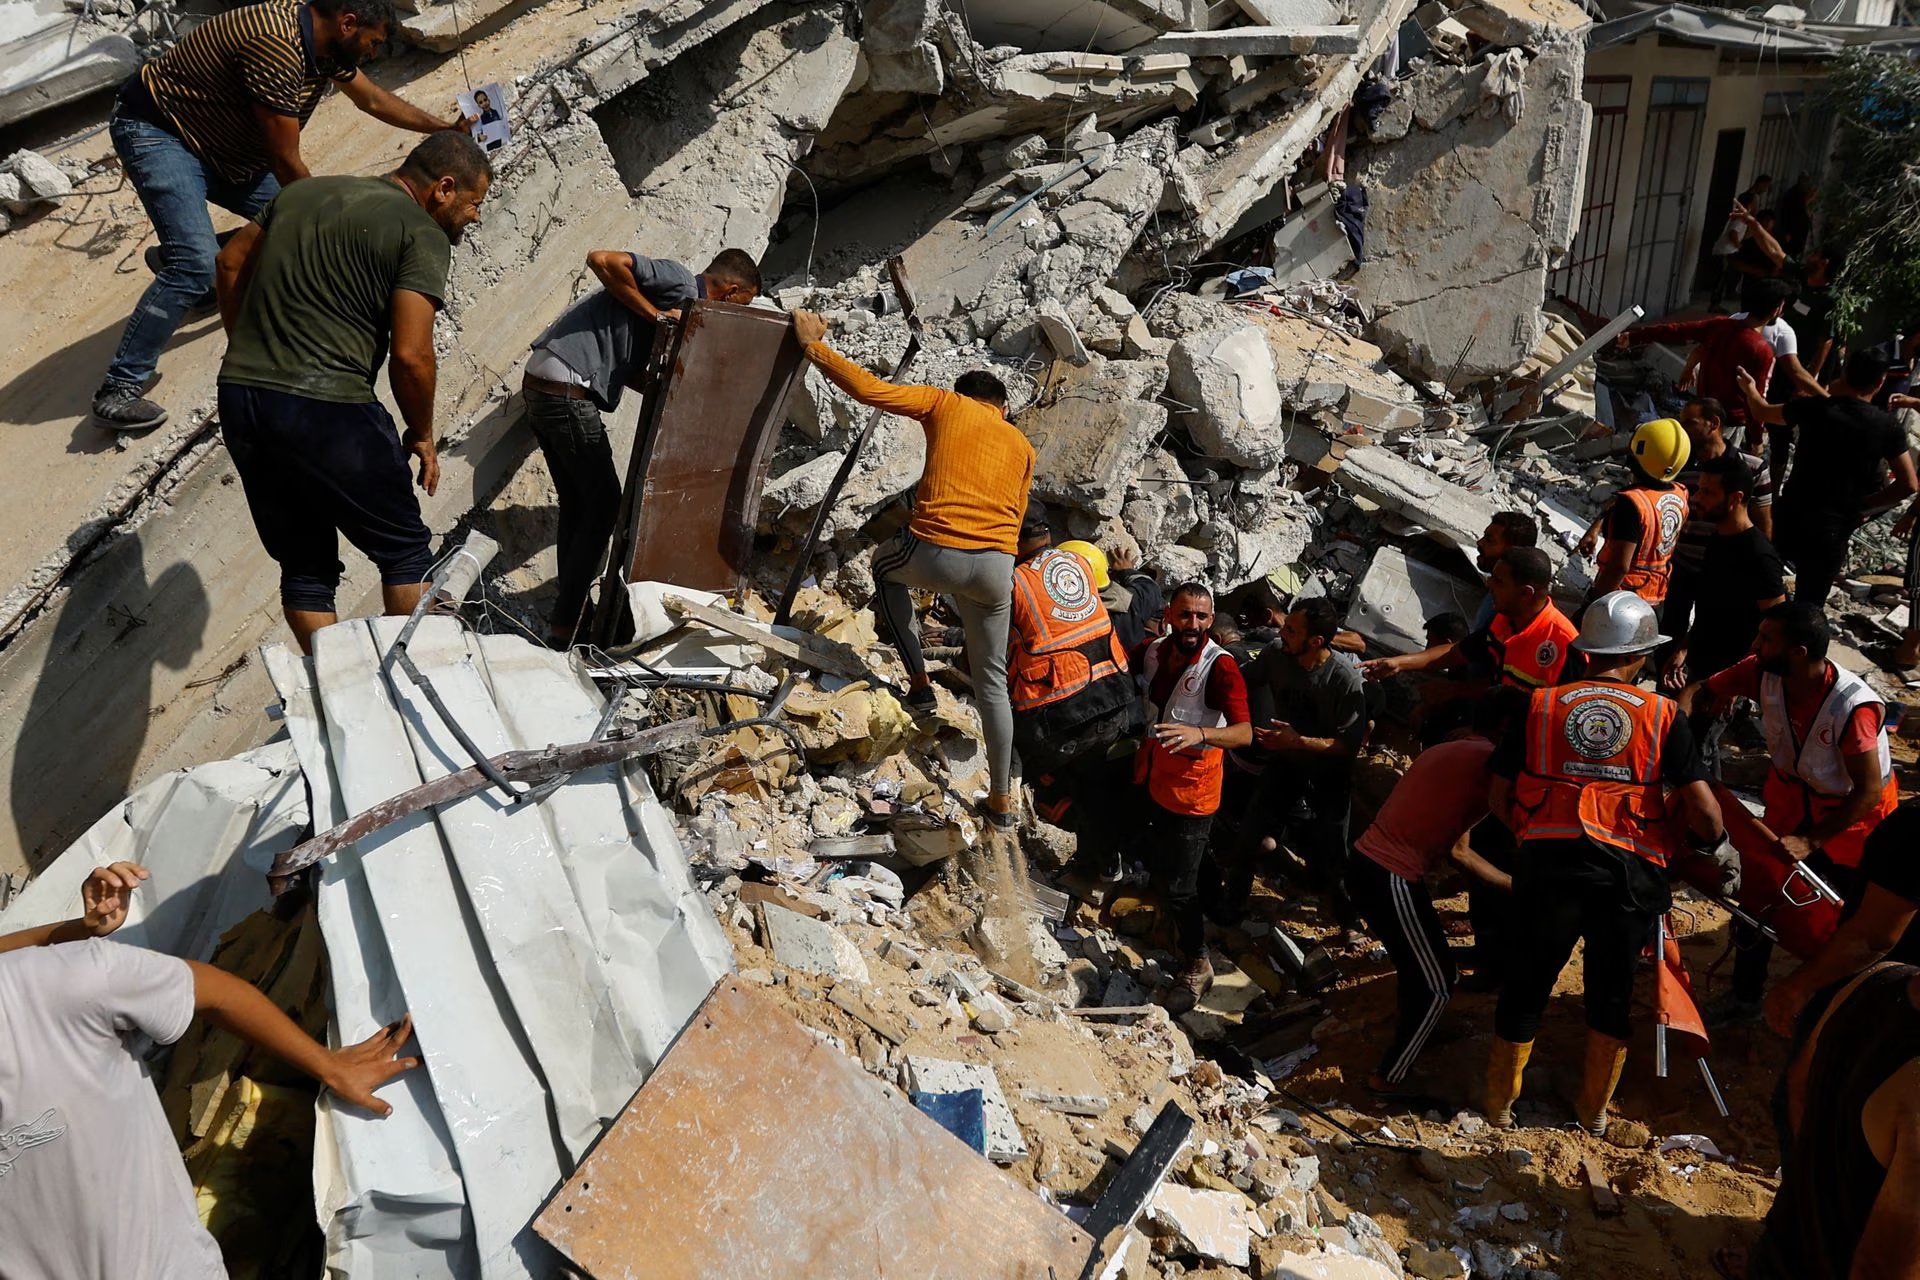 حدیث الصور ؛ إسرائيل تقصف غزة وسط مخاوف من صراع أوسع في الشرق الأوسط